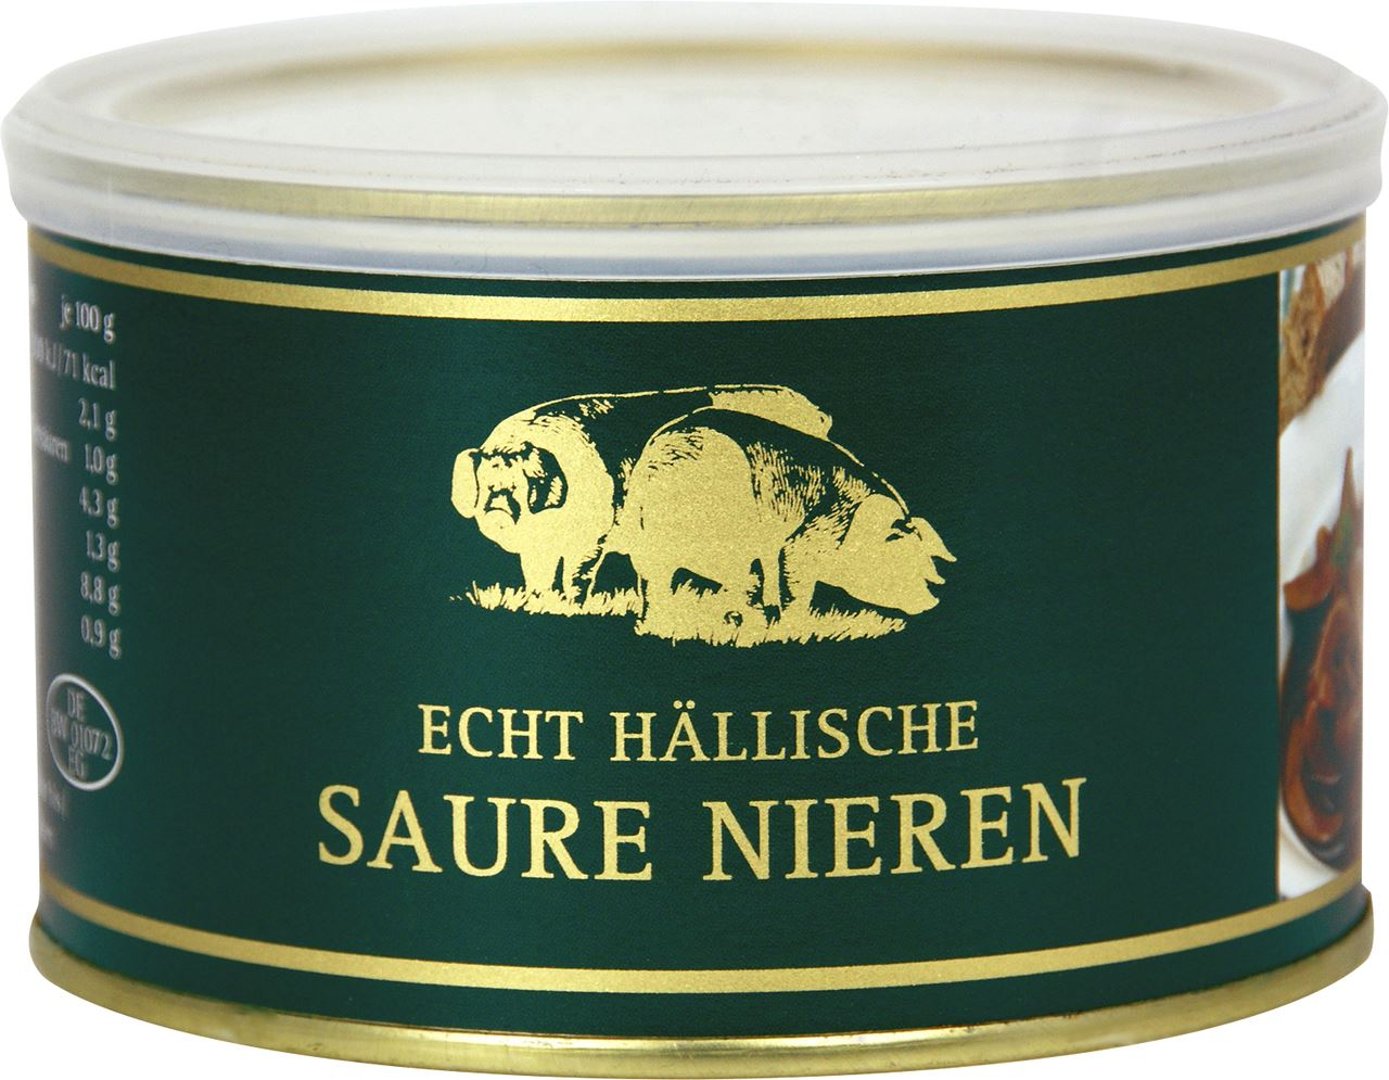 Echt Hällische - Saure Nieren Schwein - 1 x 400 g Dose